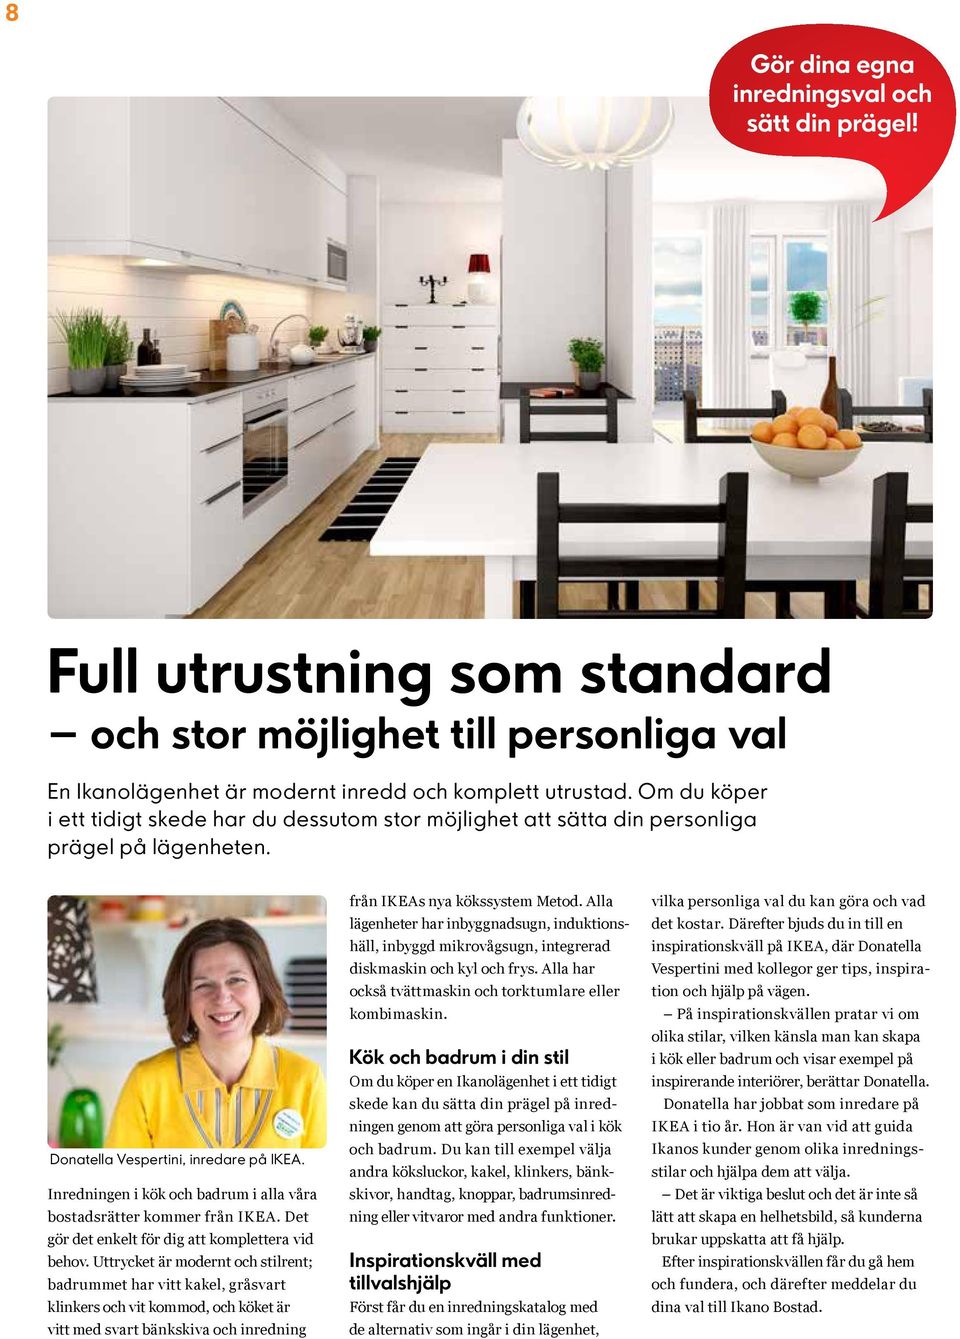 Inredningen i kök och badrum i alla våra bostadsrätter kommer från IKEA. Det gör det enkelt för dig att komplettera vid behov.